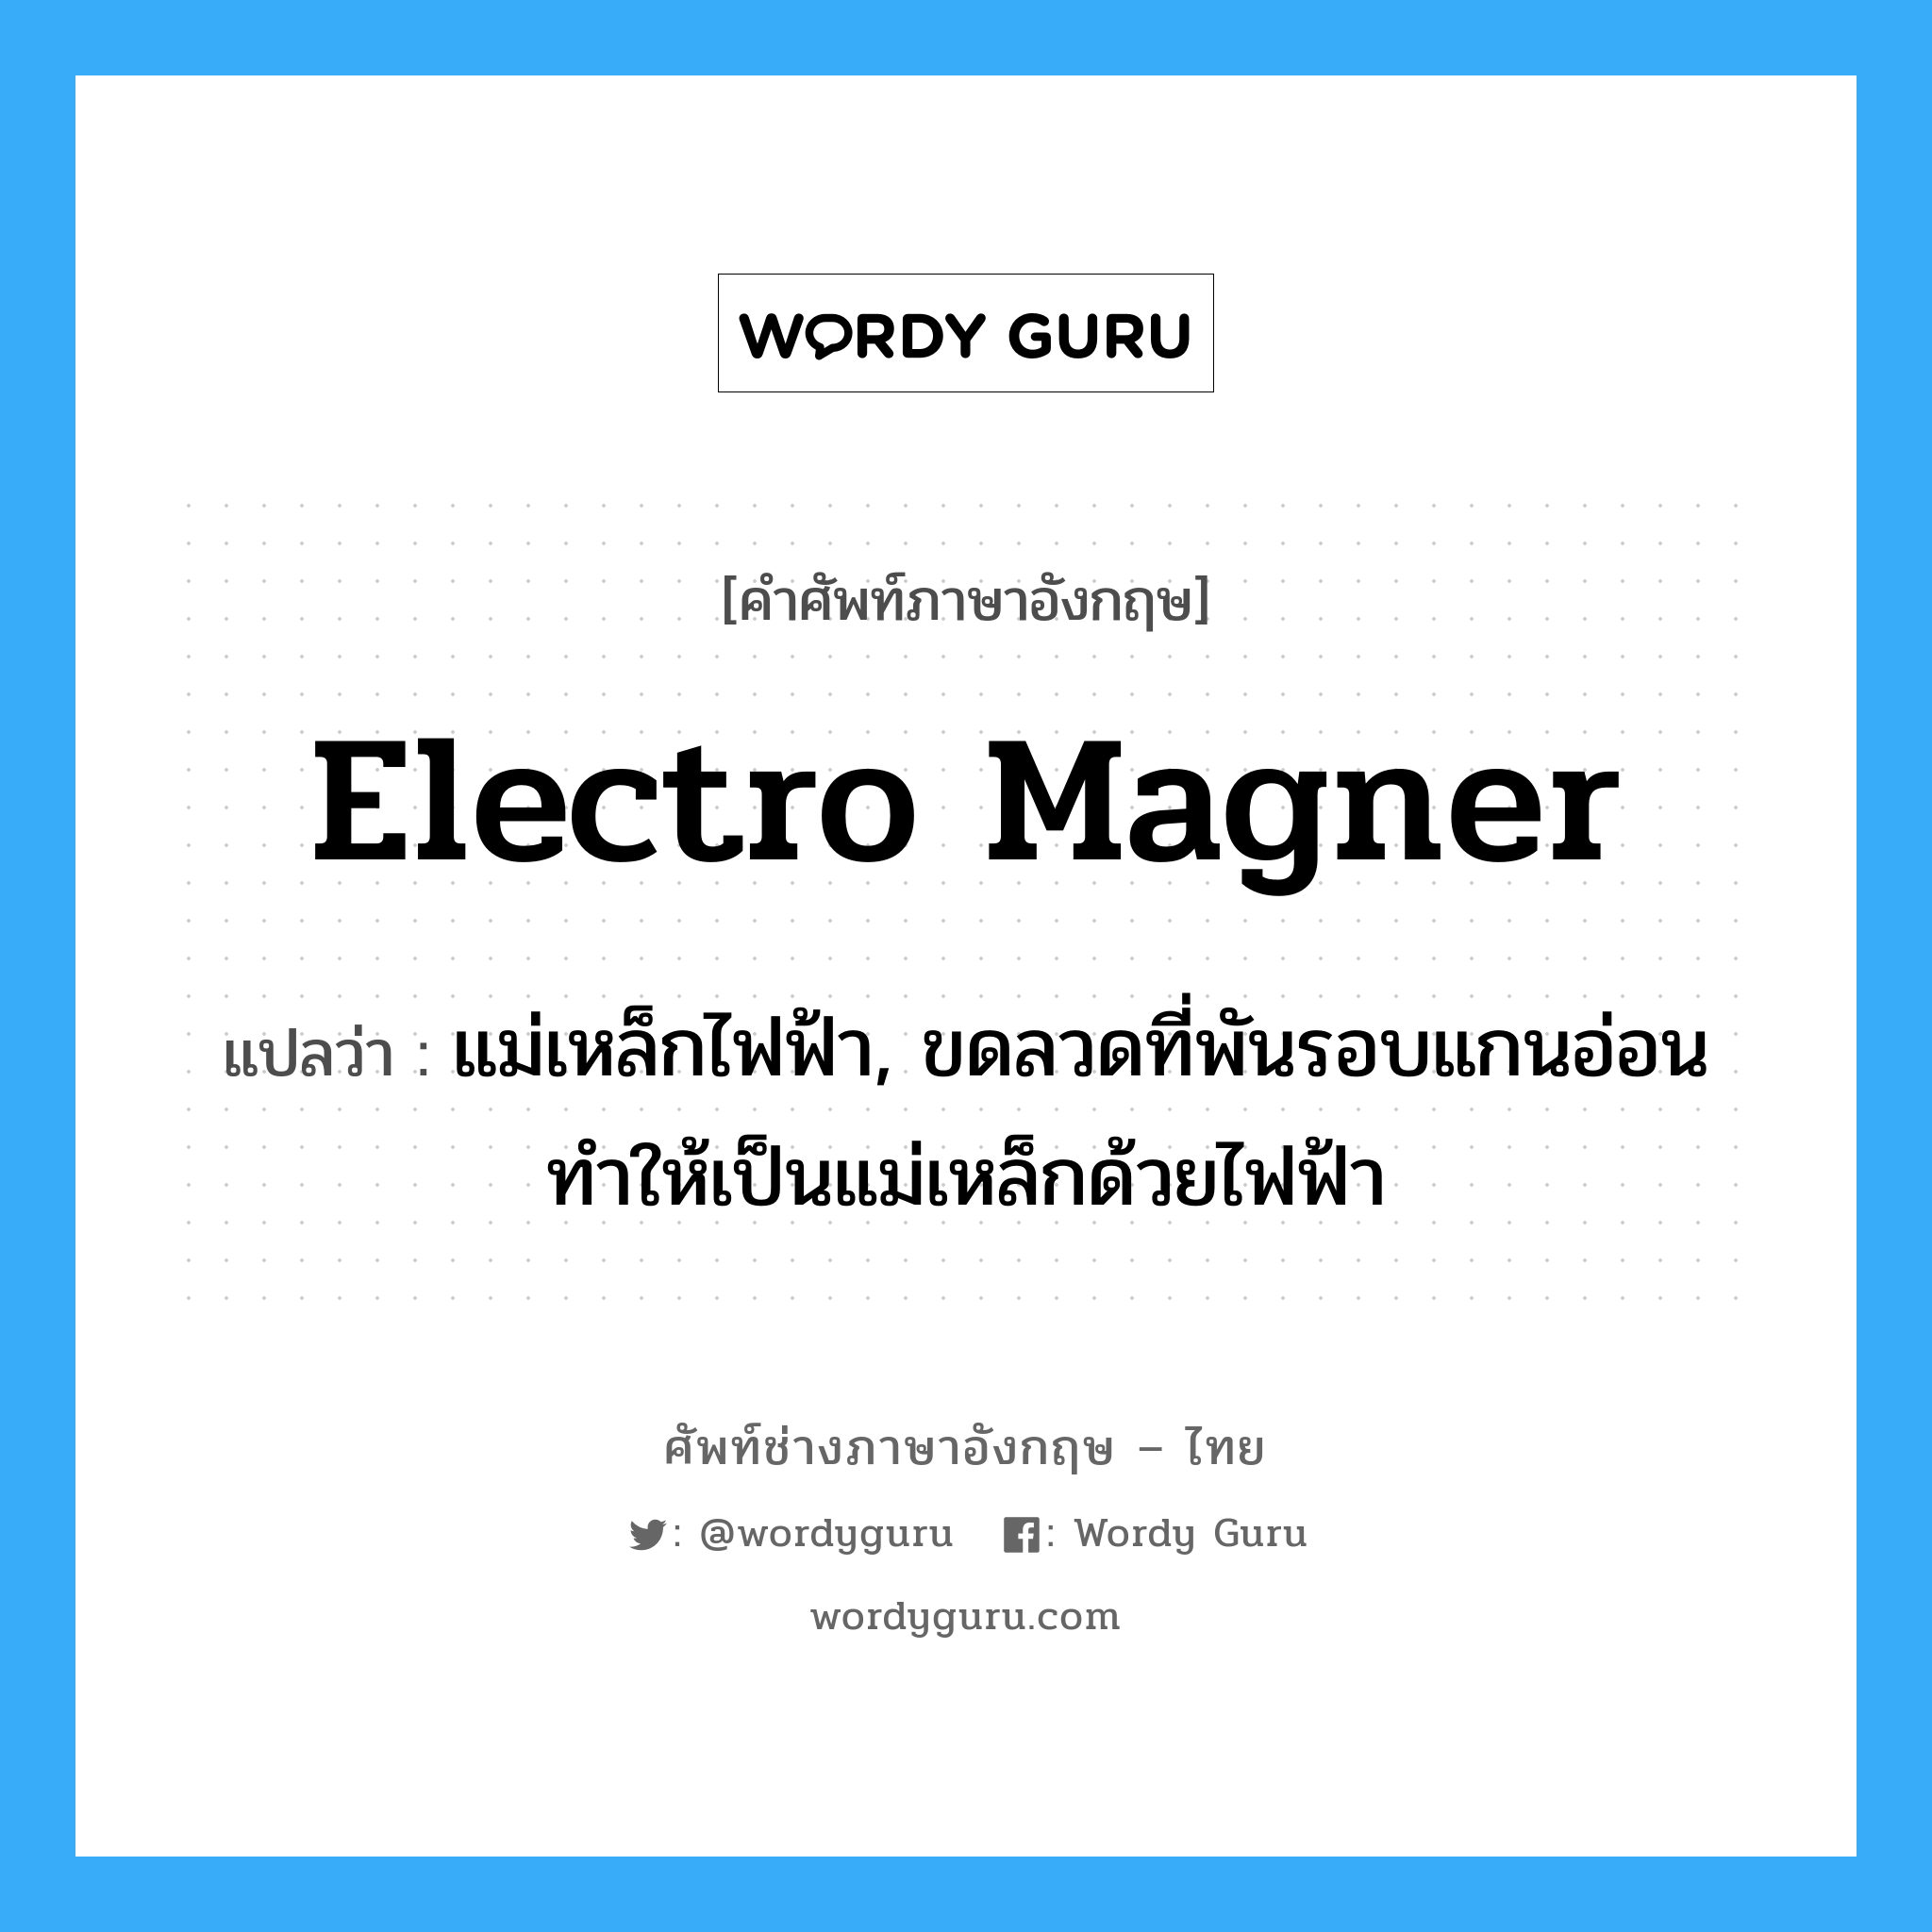 electro magner แปลว่า?, คำศัพท์ช่างภาษาอังกฤษ - ไทย electro magner คำศัพท์ภาษาอังกฤษ electro magner แปลว่า แม่เหล็กไฟฟ้า, ขดลวดที่พันรอบแกนอ่อนทำให้เป็นแม่เหล็กด้วยไฟฟ้า